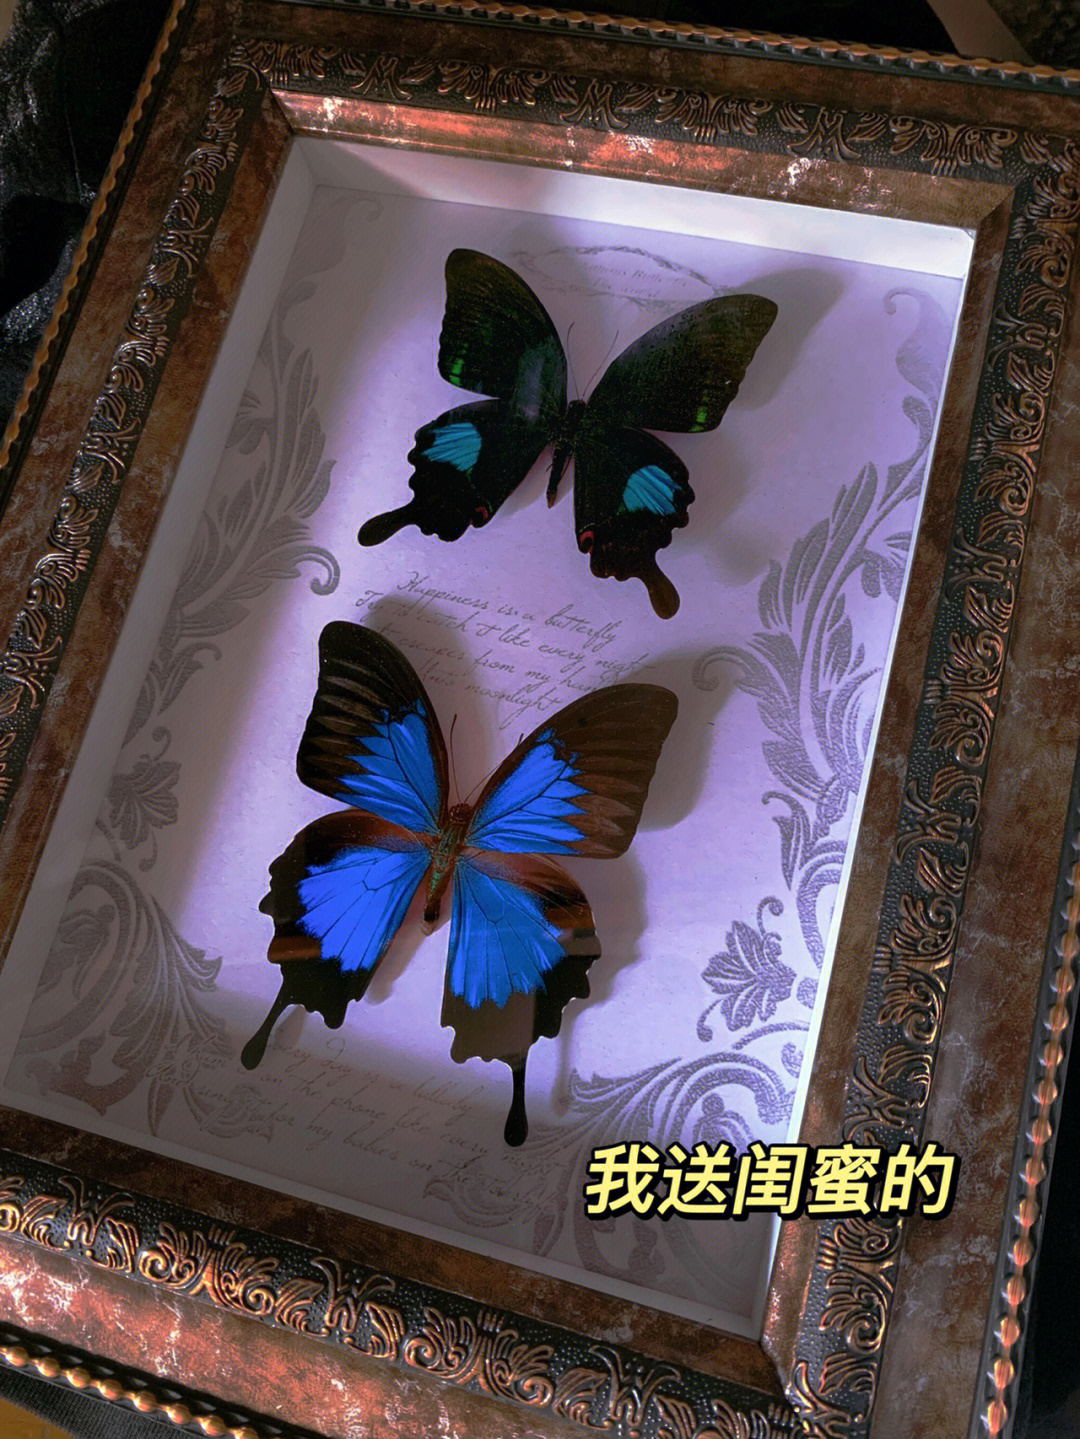 自从上次去「拾光纪」(p3)看到以后就心心念念了很久想买蝴蝶,一看到